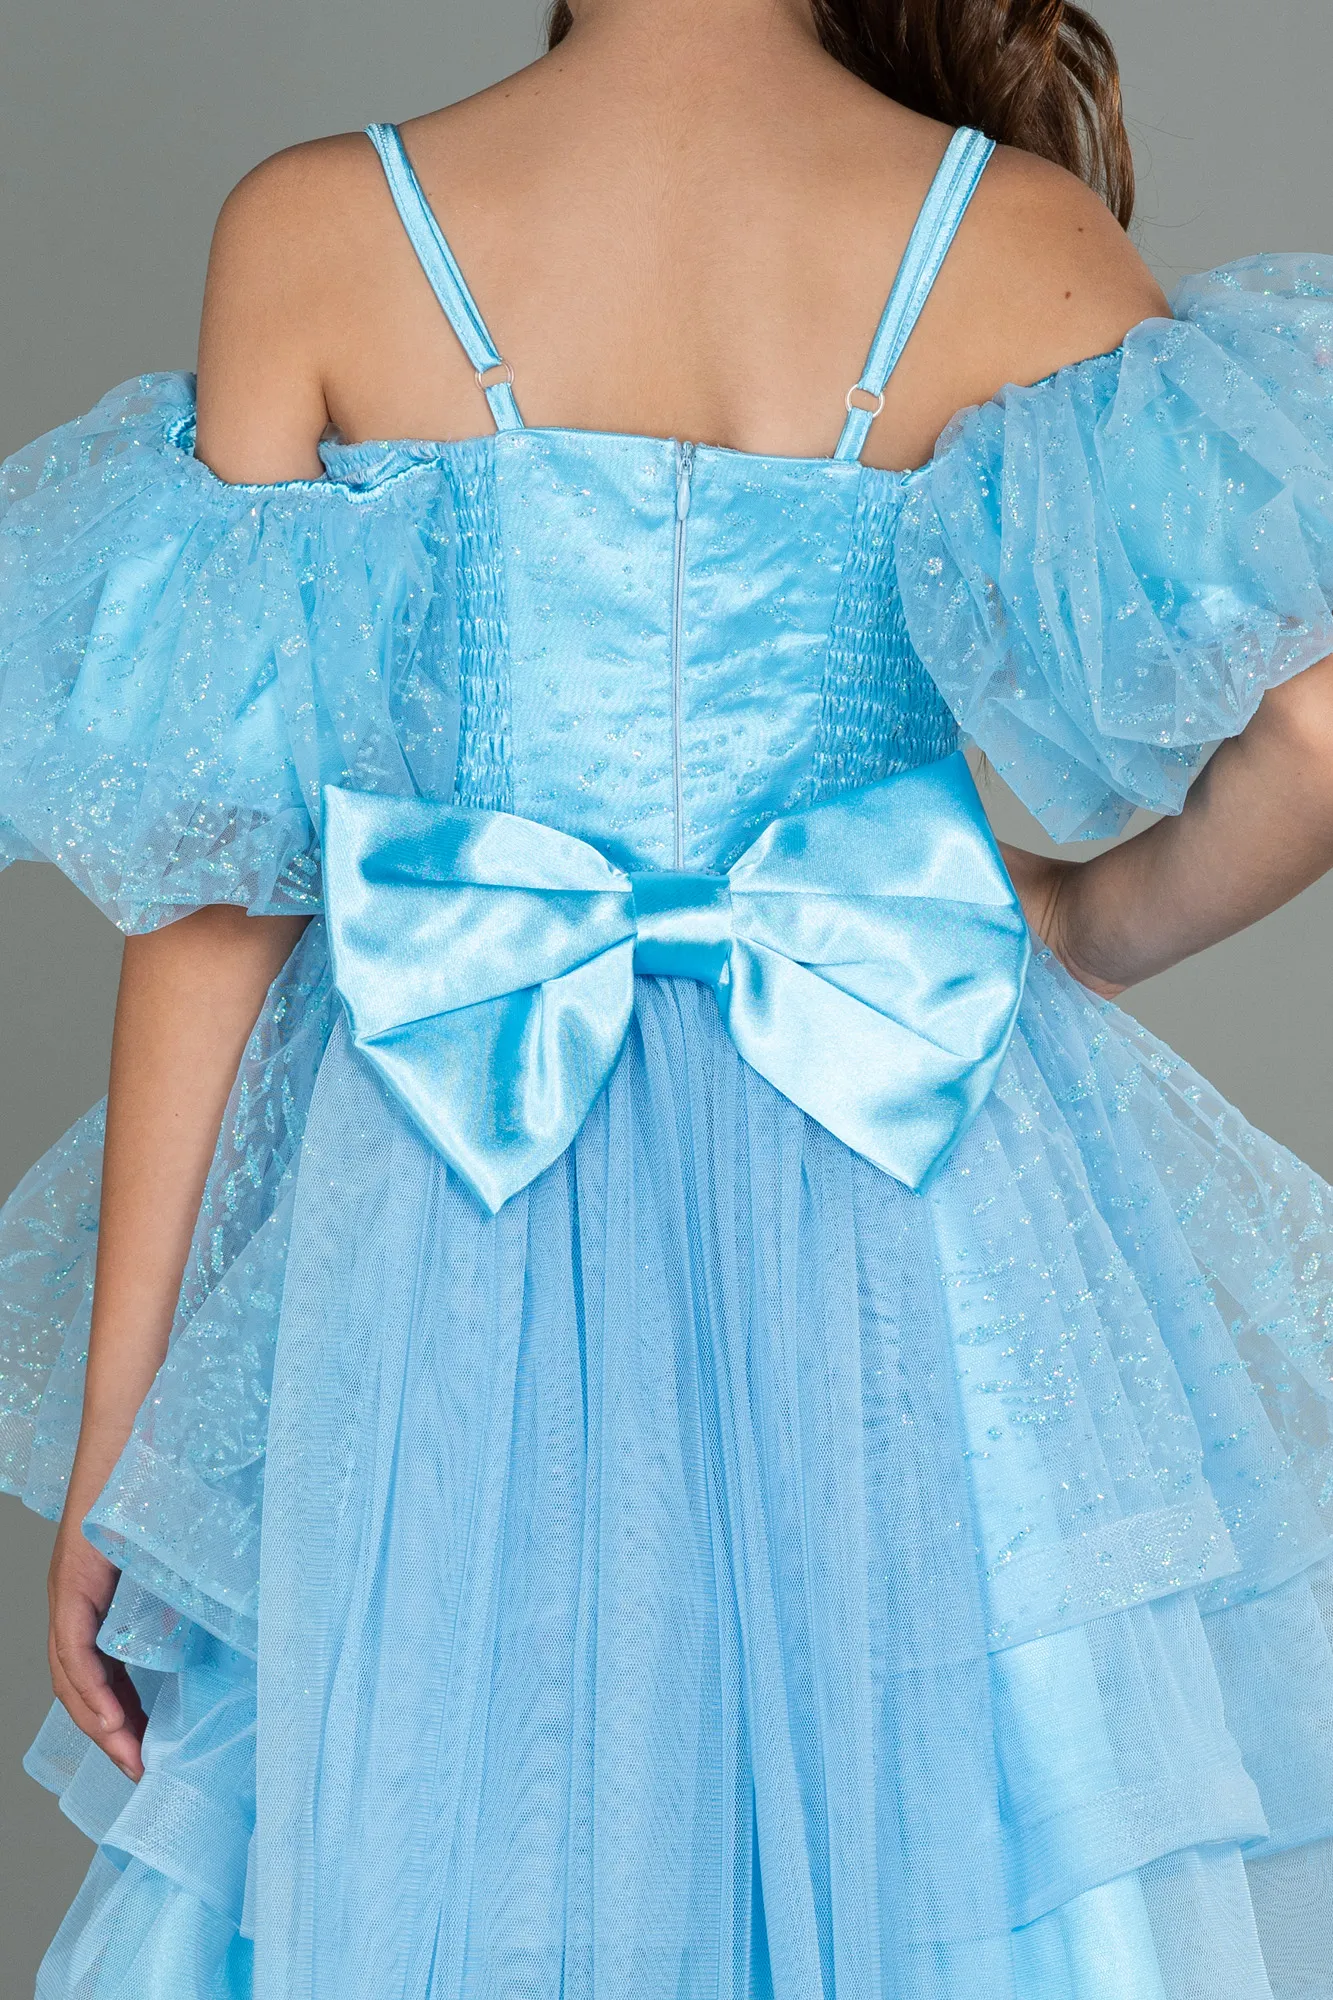 Blue-Short Girl Dress ABK1716